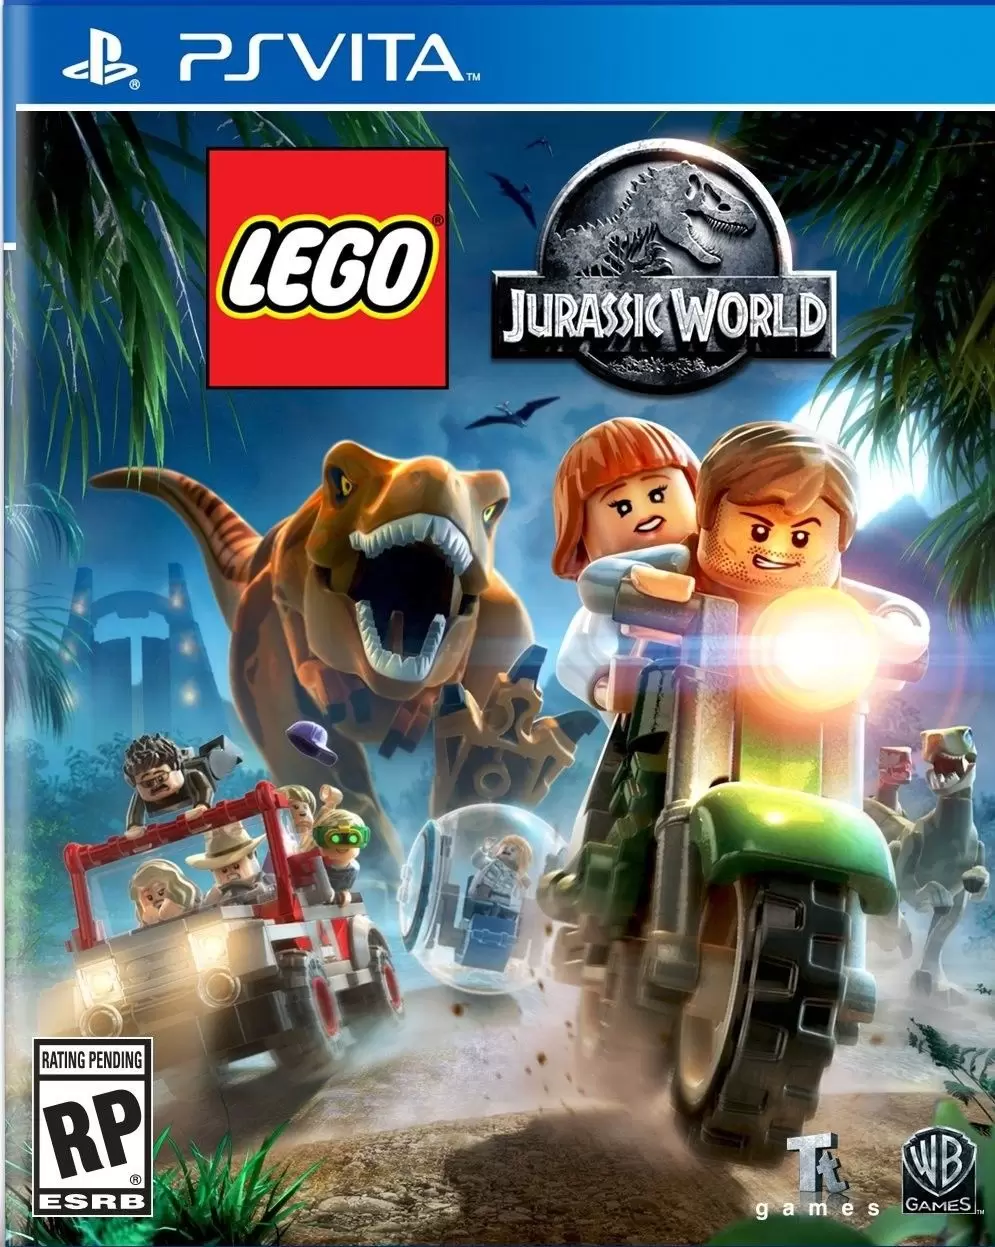 PS Vita Games - LEGO Jurassic World